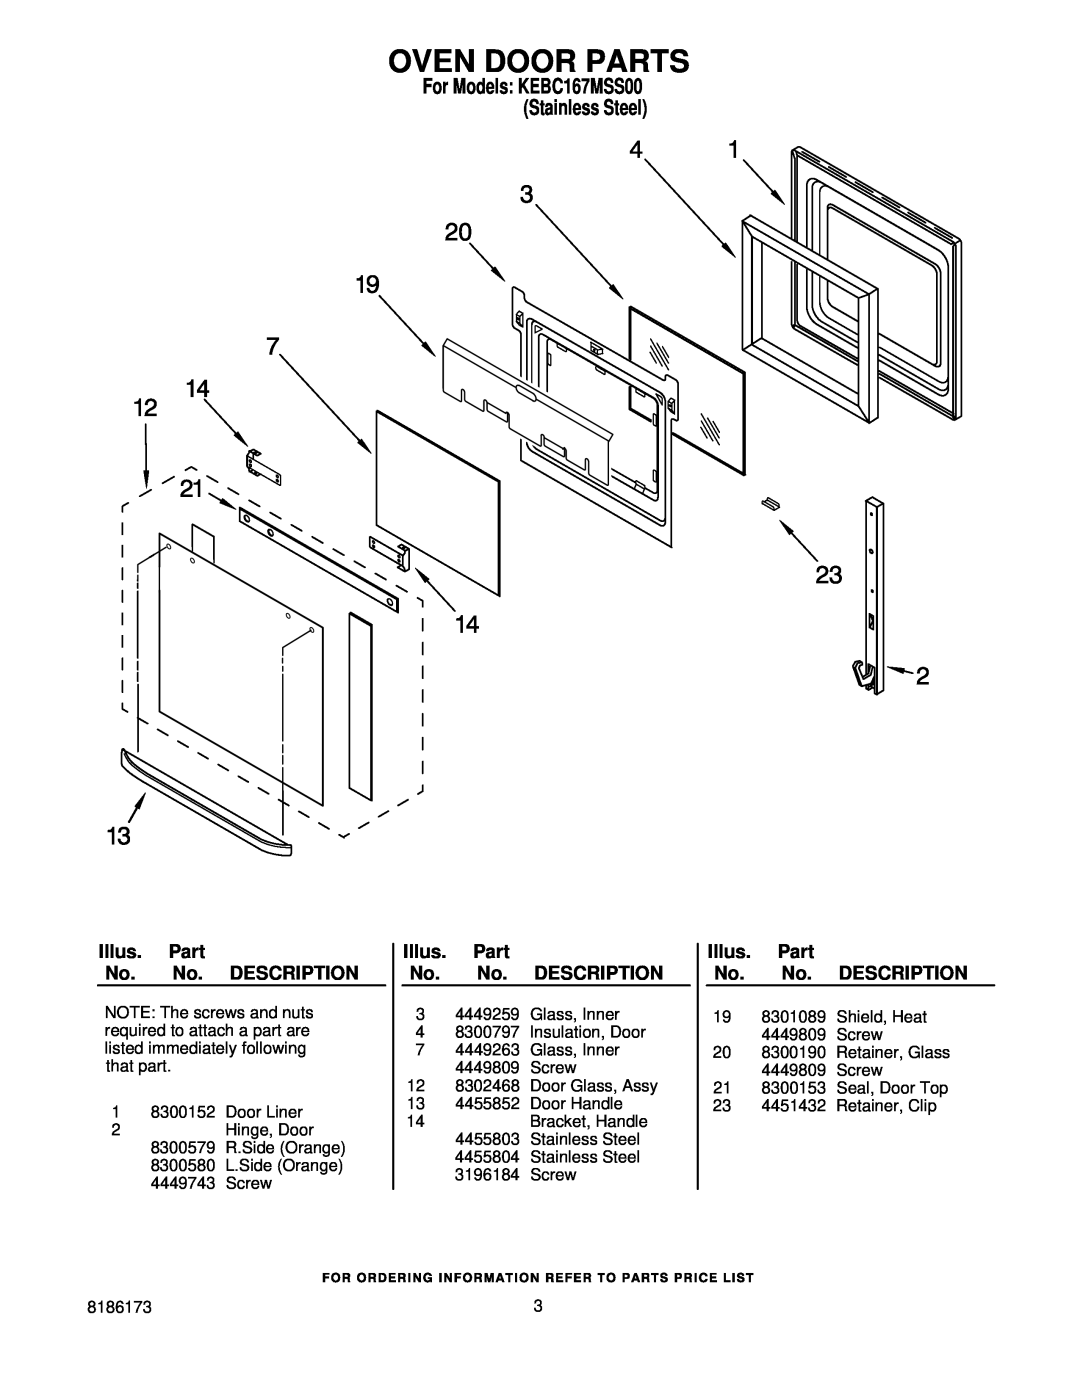 KitchenAid KEBC167MSS00 manual Oven Door Parts, Illus. Part No. No. DESCRIPTION 